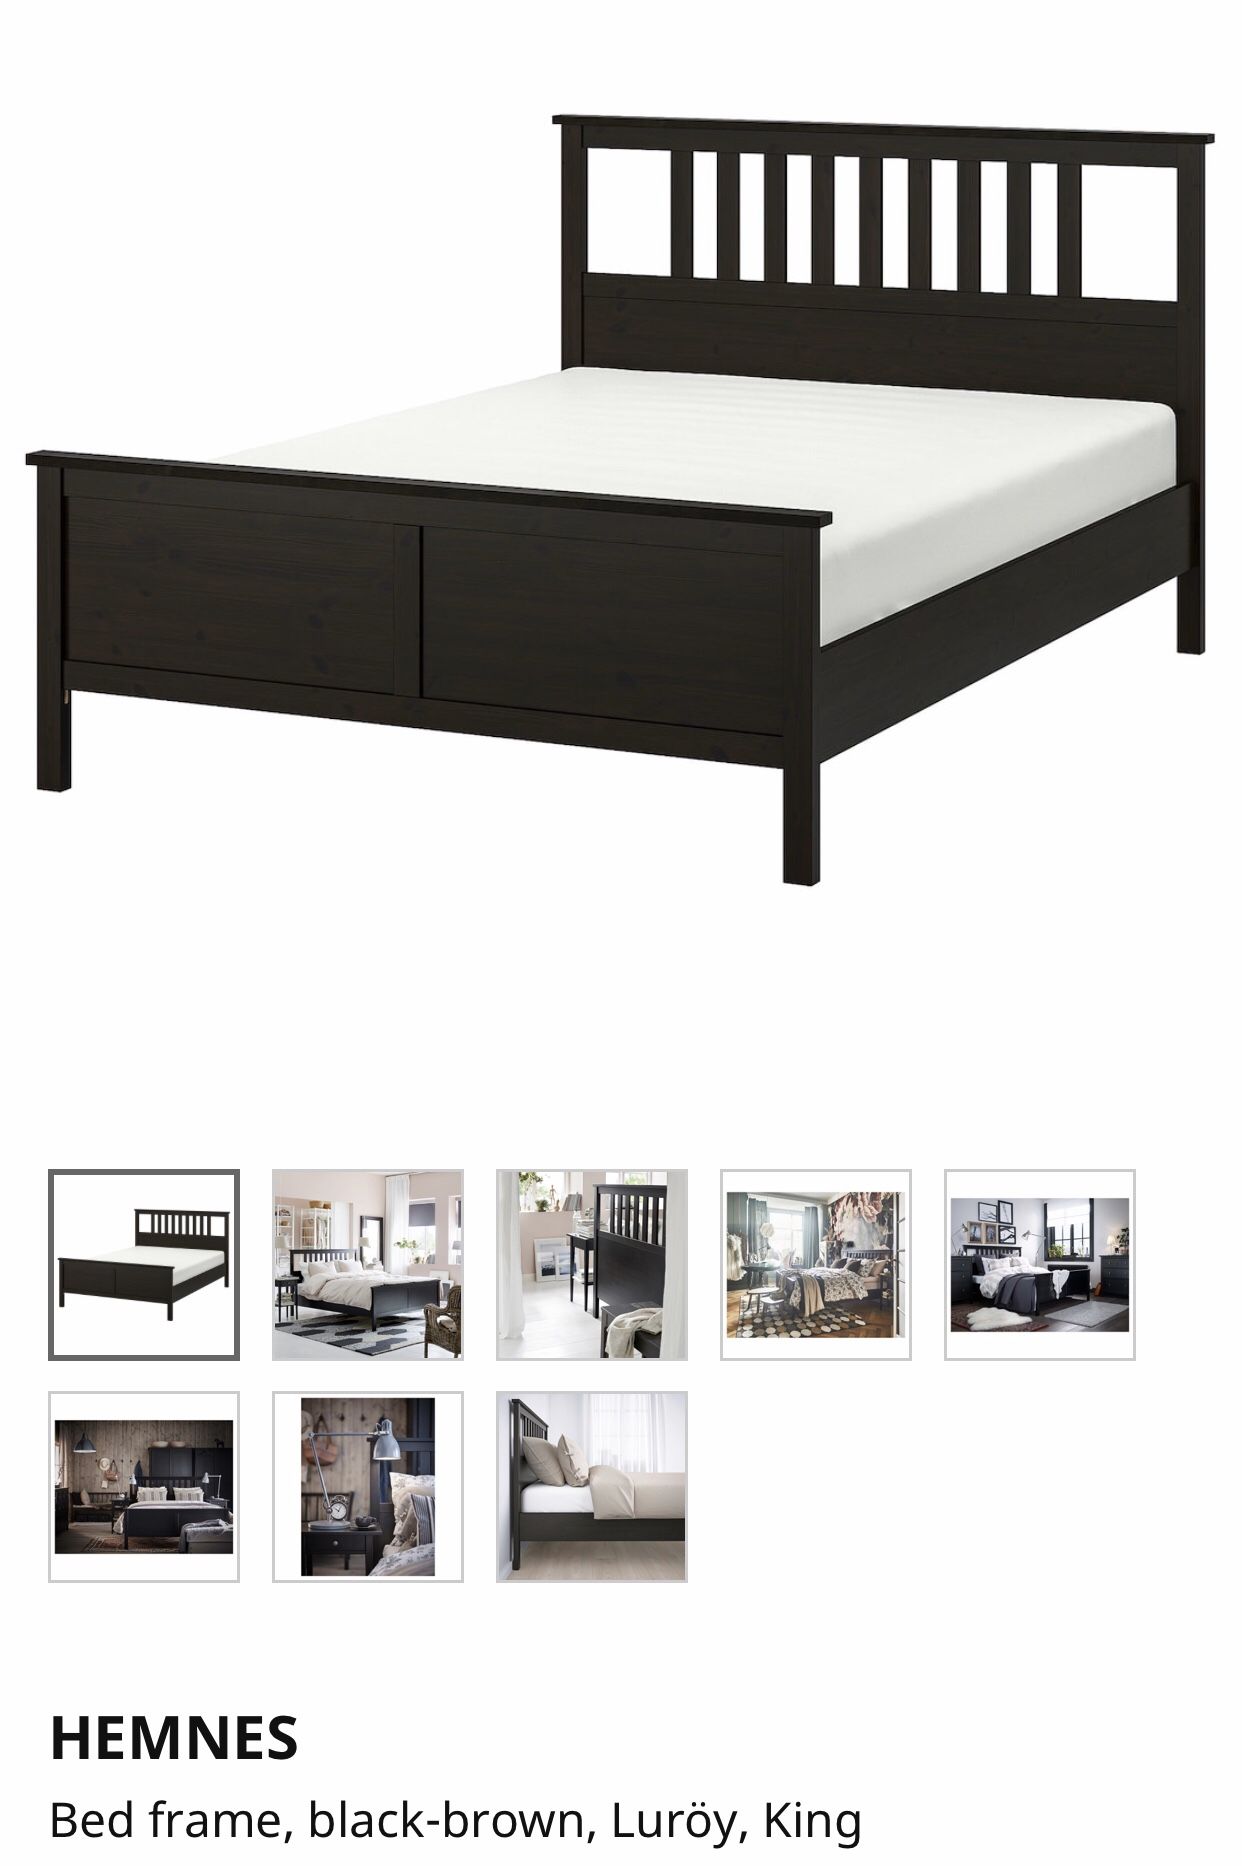 IKEA Hemnes King 5 piece bedroom set